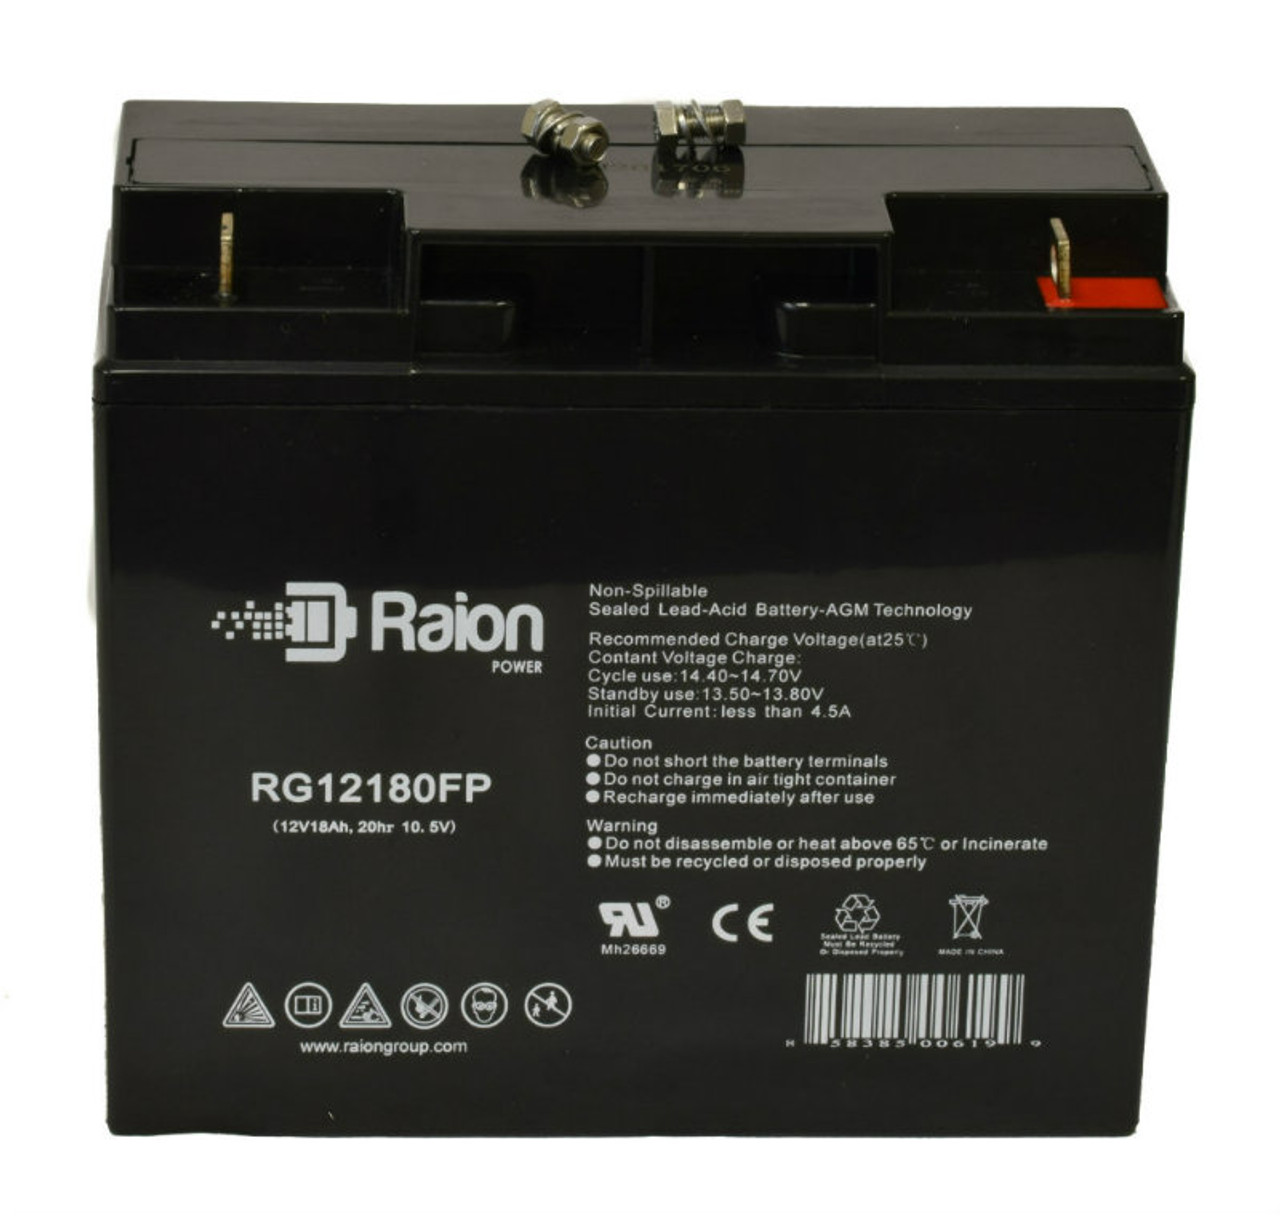 Raion Power RG12180FP 12V 18Ah Lead Acid Battery for Ohio 1000 Oxy Power System Auxiliary